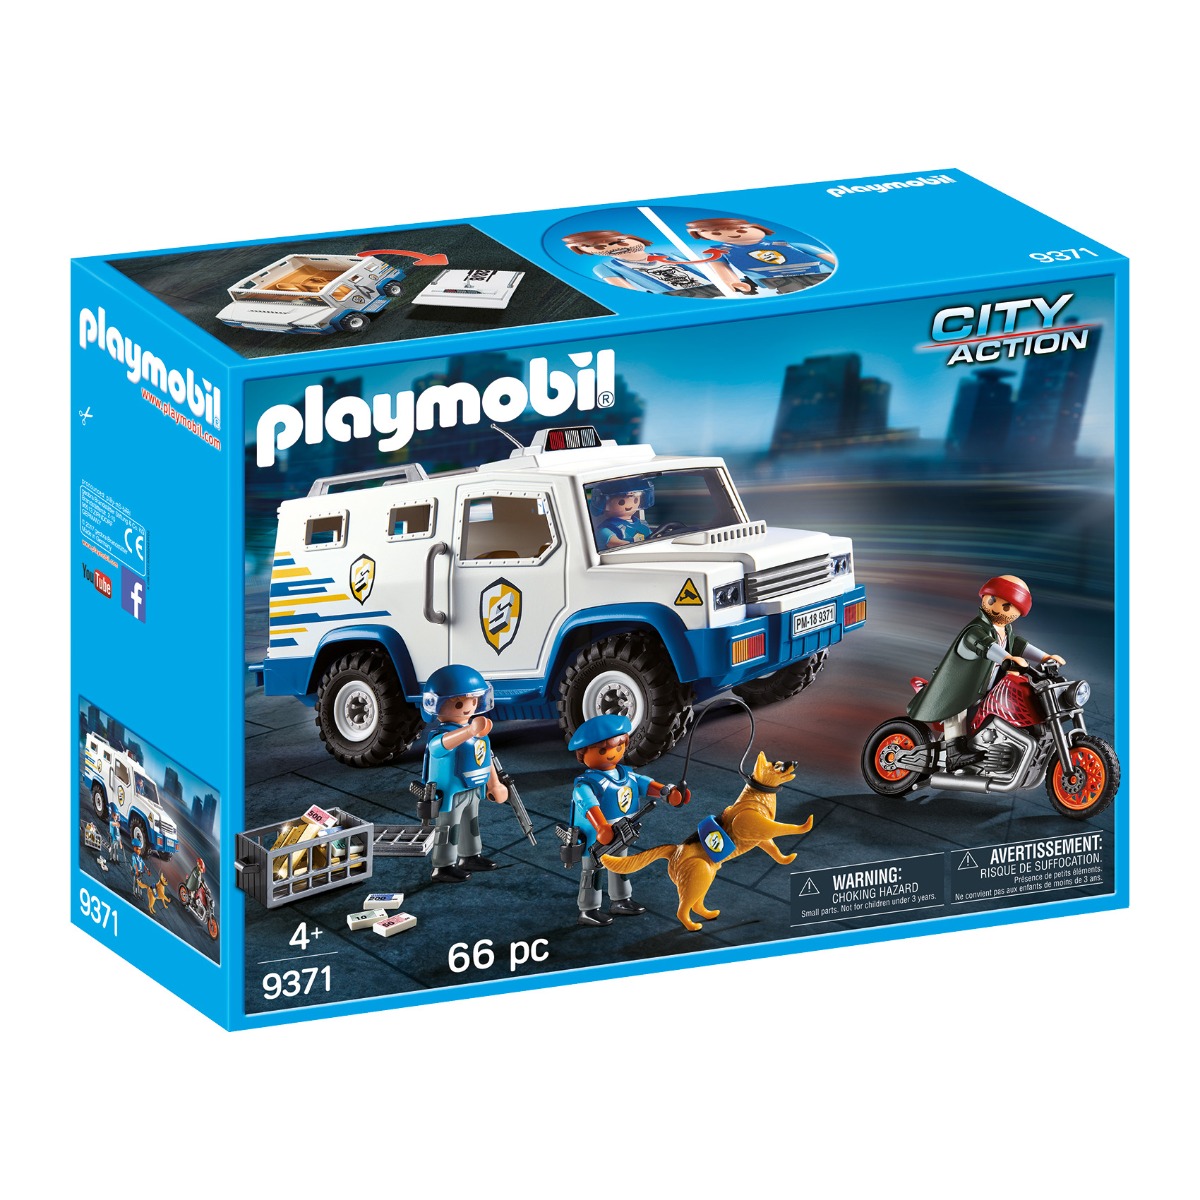 Set Playmobil City Action – Masina de politie blindata (9371) noriel.ro imagine noua